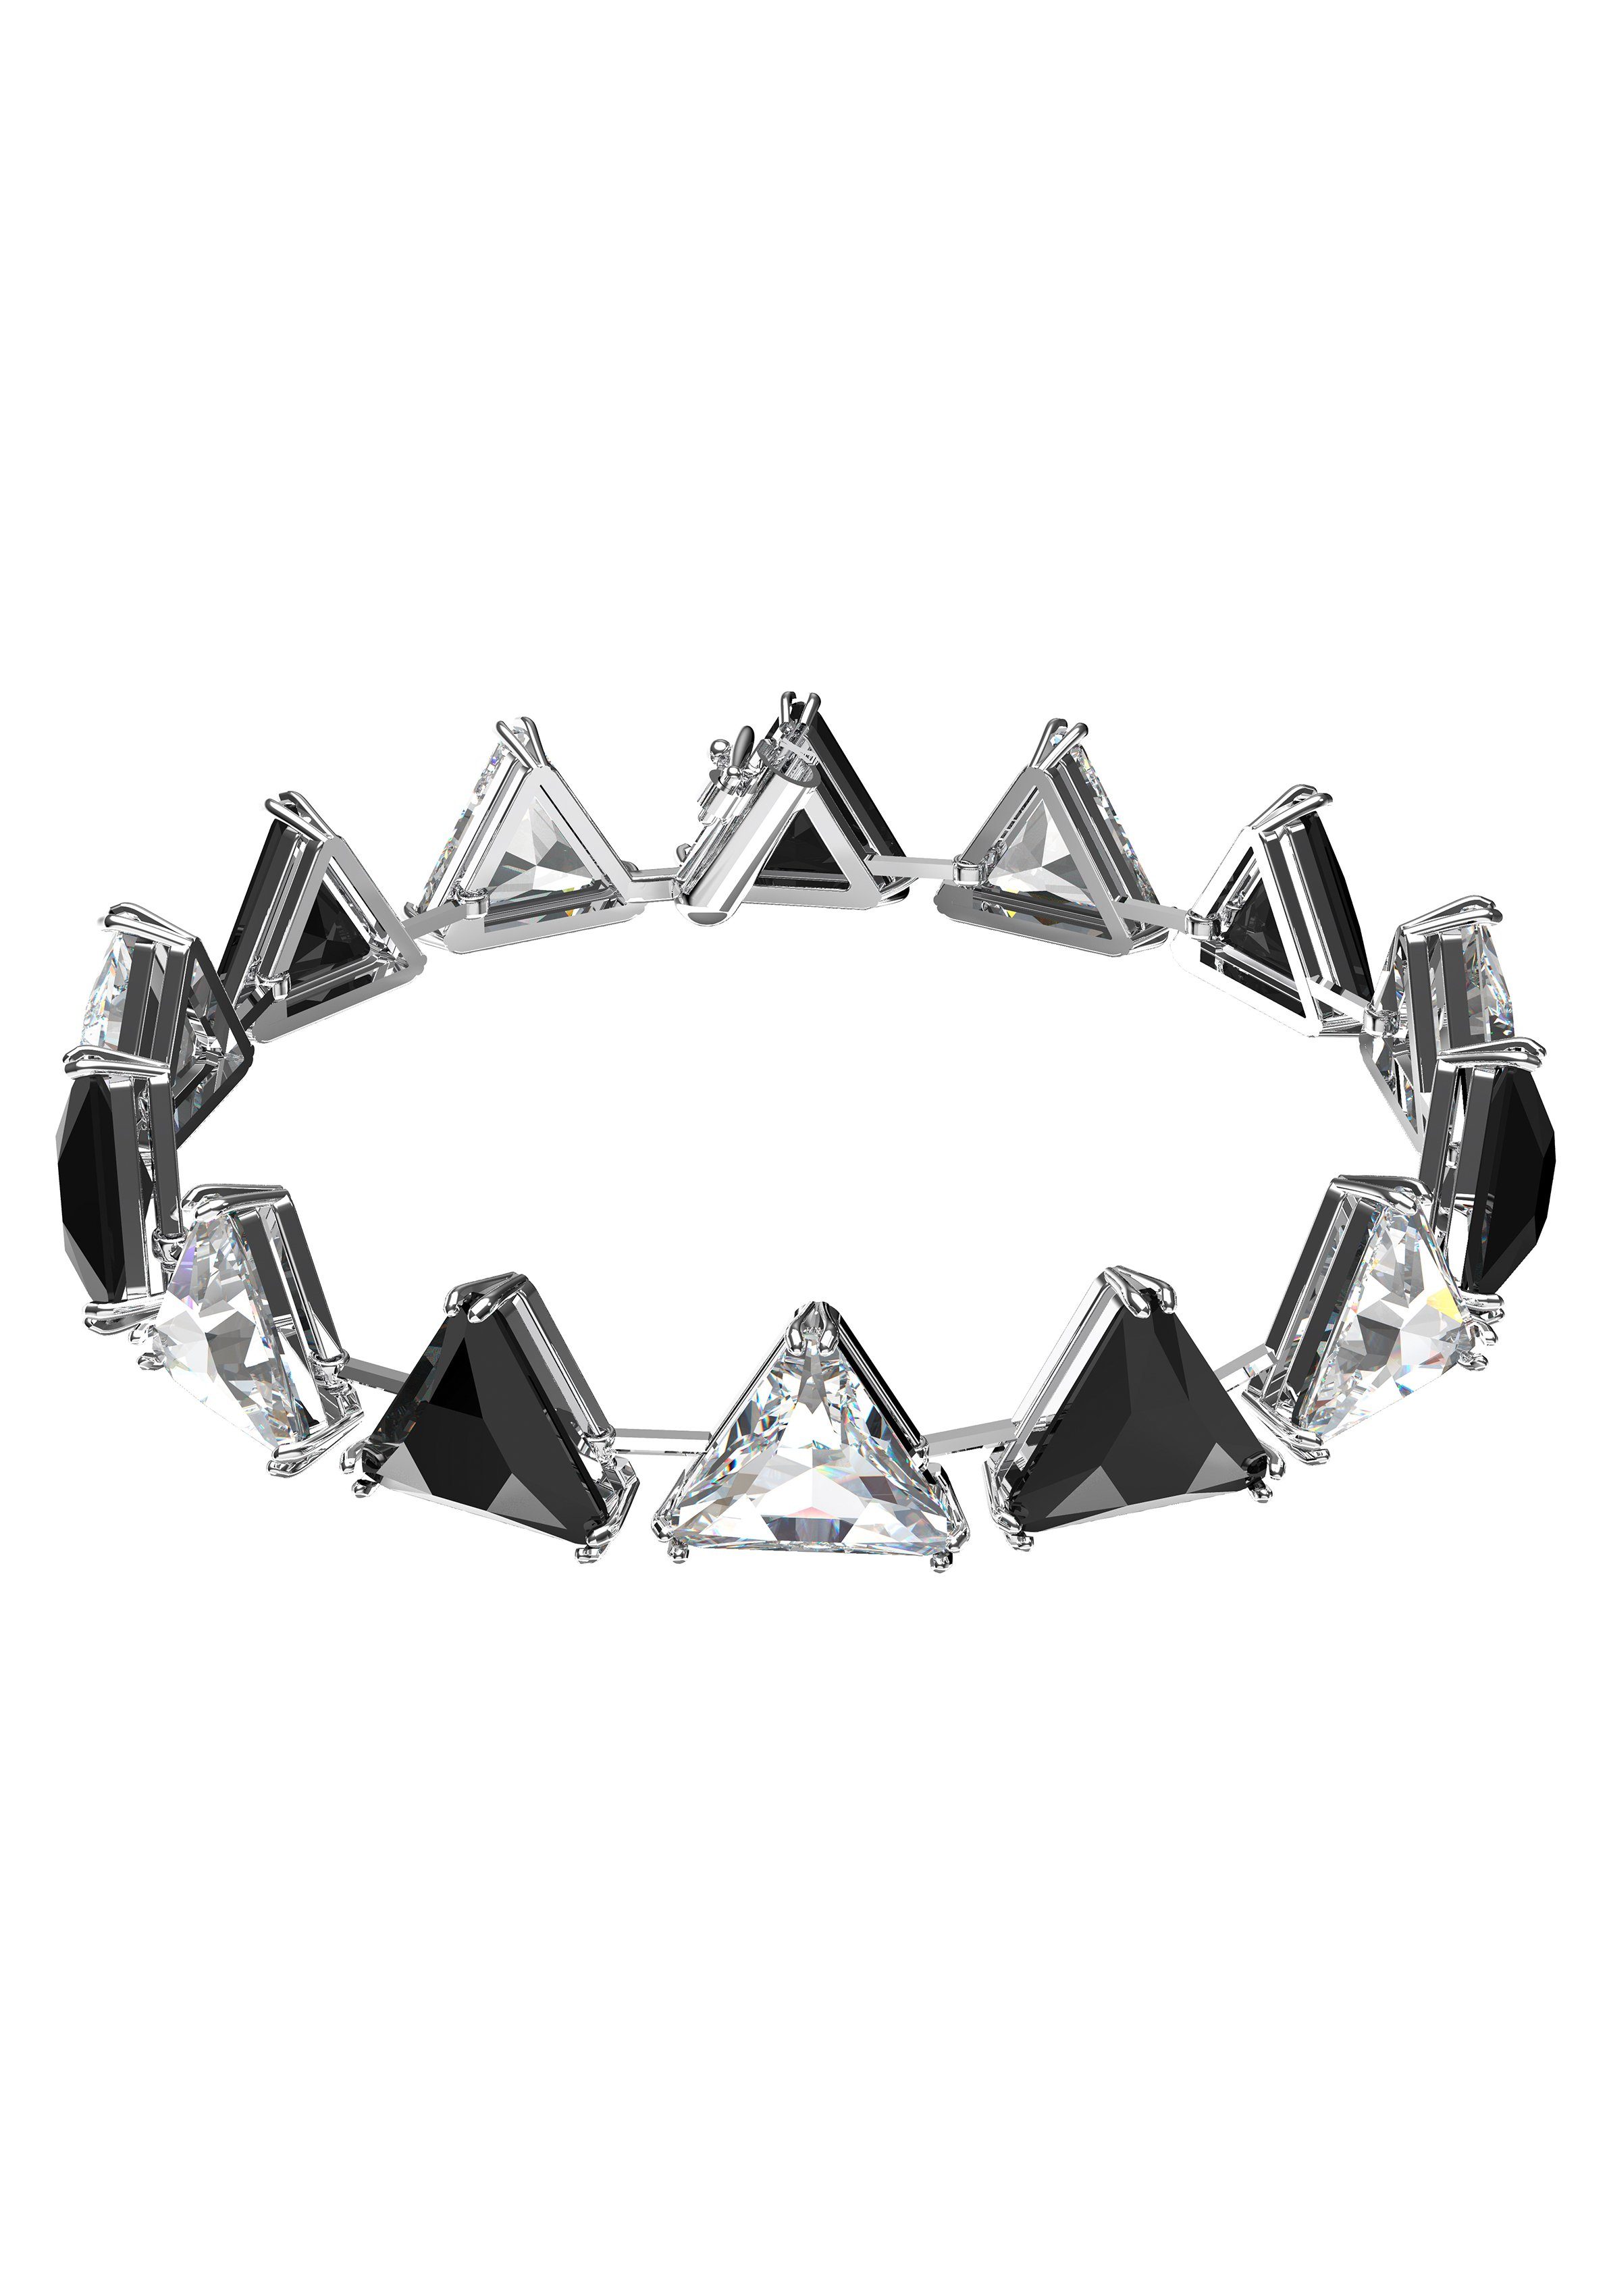 Swarovski Armband Ortyx, Kristalle im Dreiecksschliff, 5600864, 5614934, 5619154, mit Swarovski® Kristall metallfarben-schwarz-kristallweiß